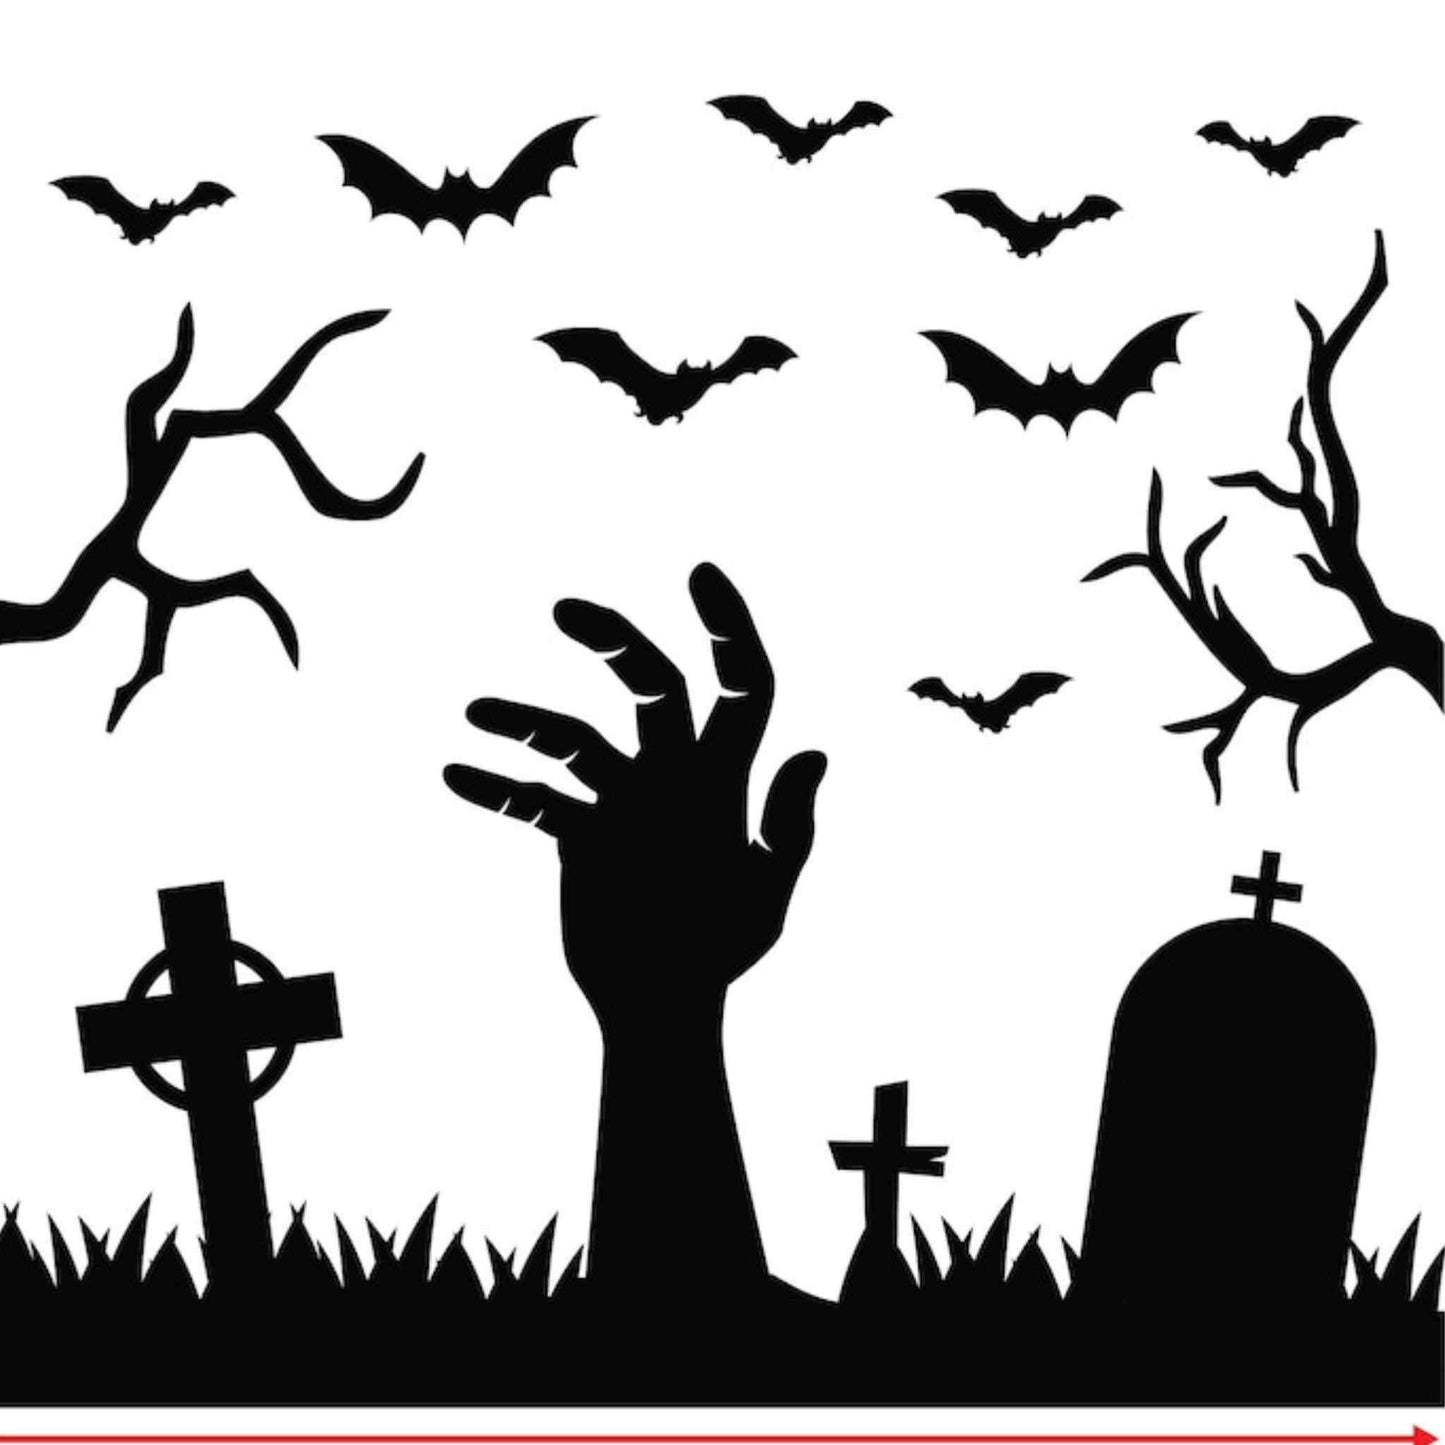 Sticker negru de Halloween, creepy, cu aplicare usoara de orice suprafata.